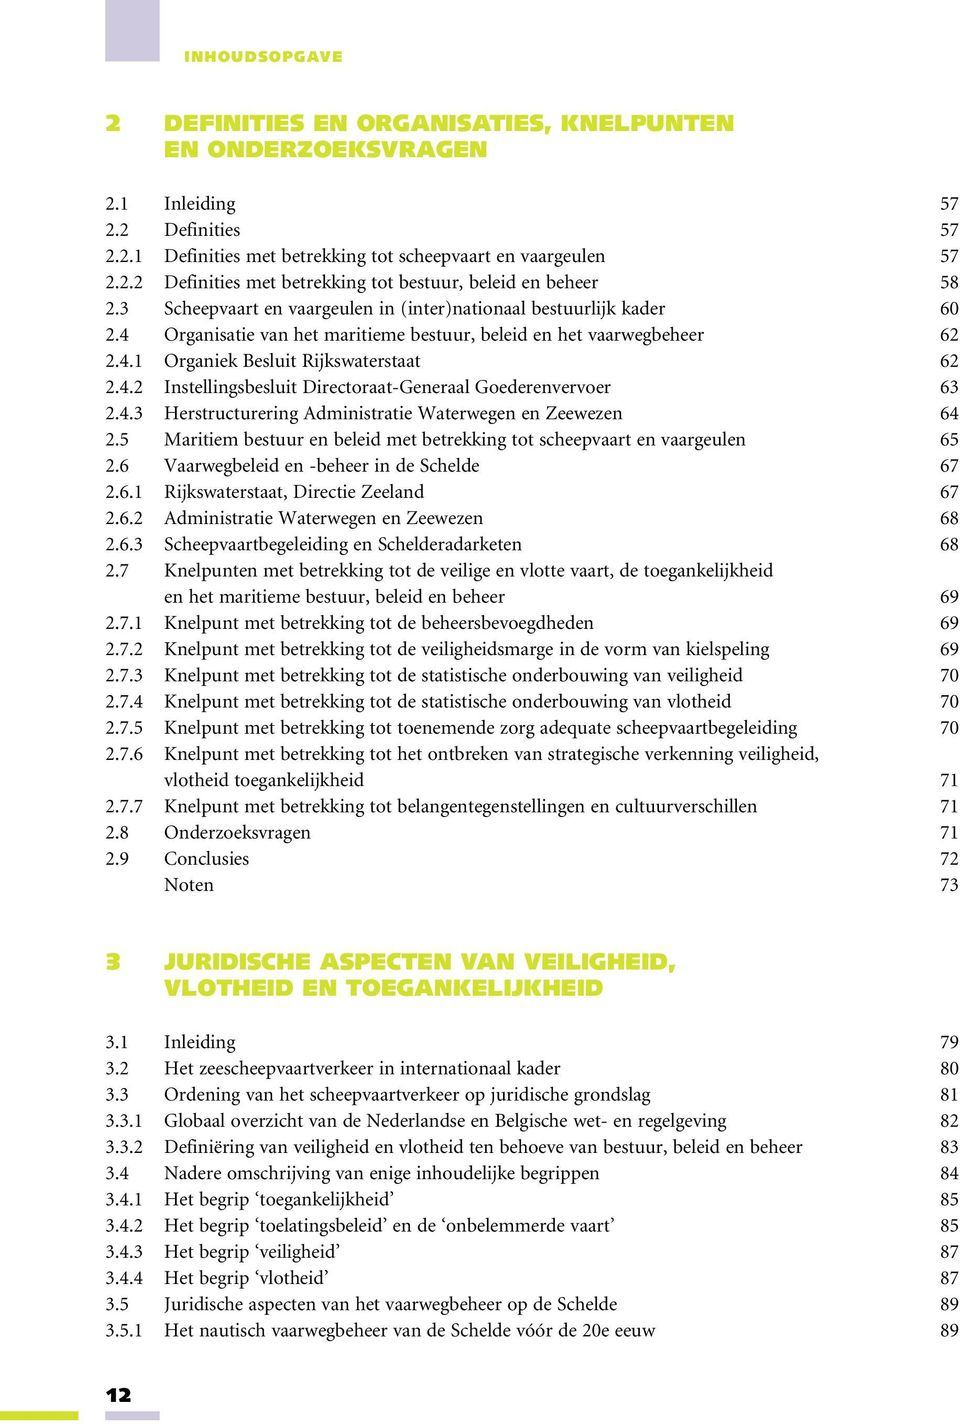 4.3 Herstructurering Administratie Waterwegen en Zeewezen 64 2.5 Maritiem bestuur en beleid met betrekking tot scheepvaart en vaargeulen 65 2.6 Vaarwegbeleid en -beheer in de Schelde 67 2.6.1 Rijkswaterstaat, Directie Zeeland 67 2.